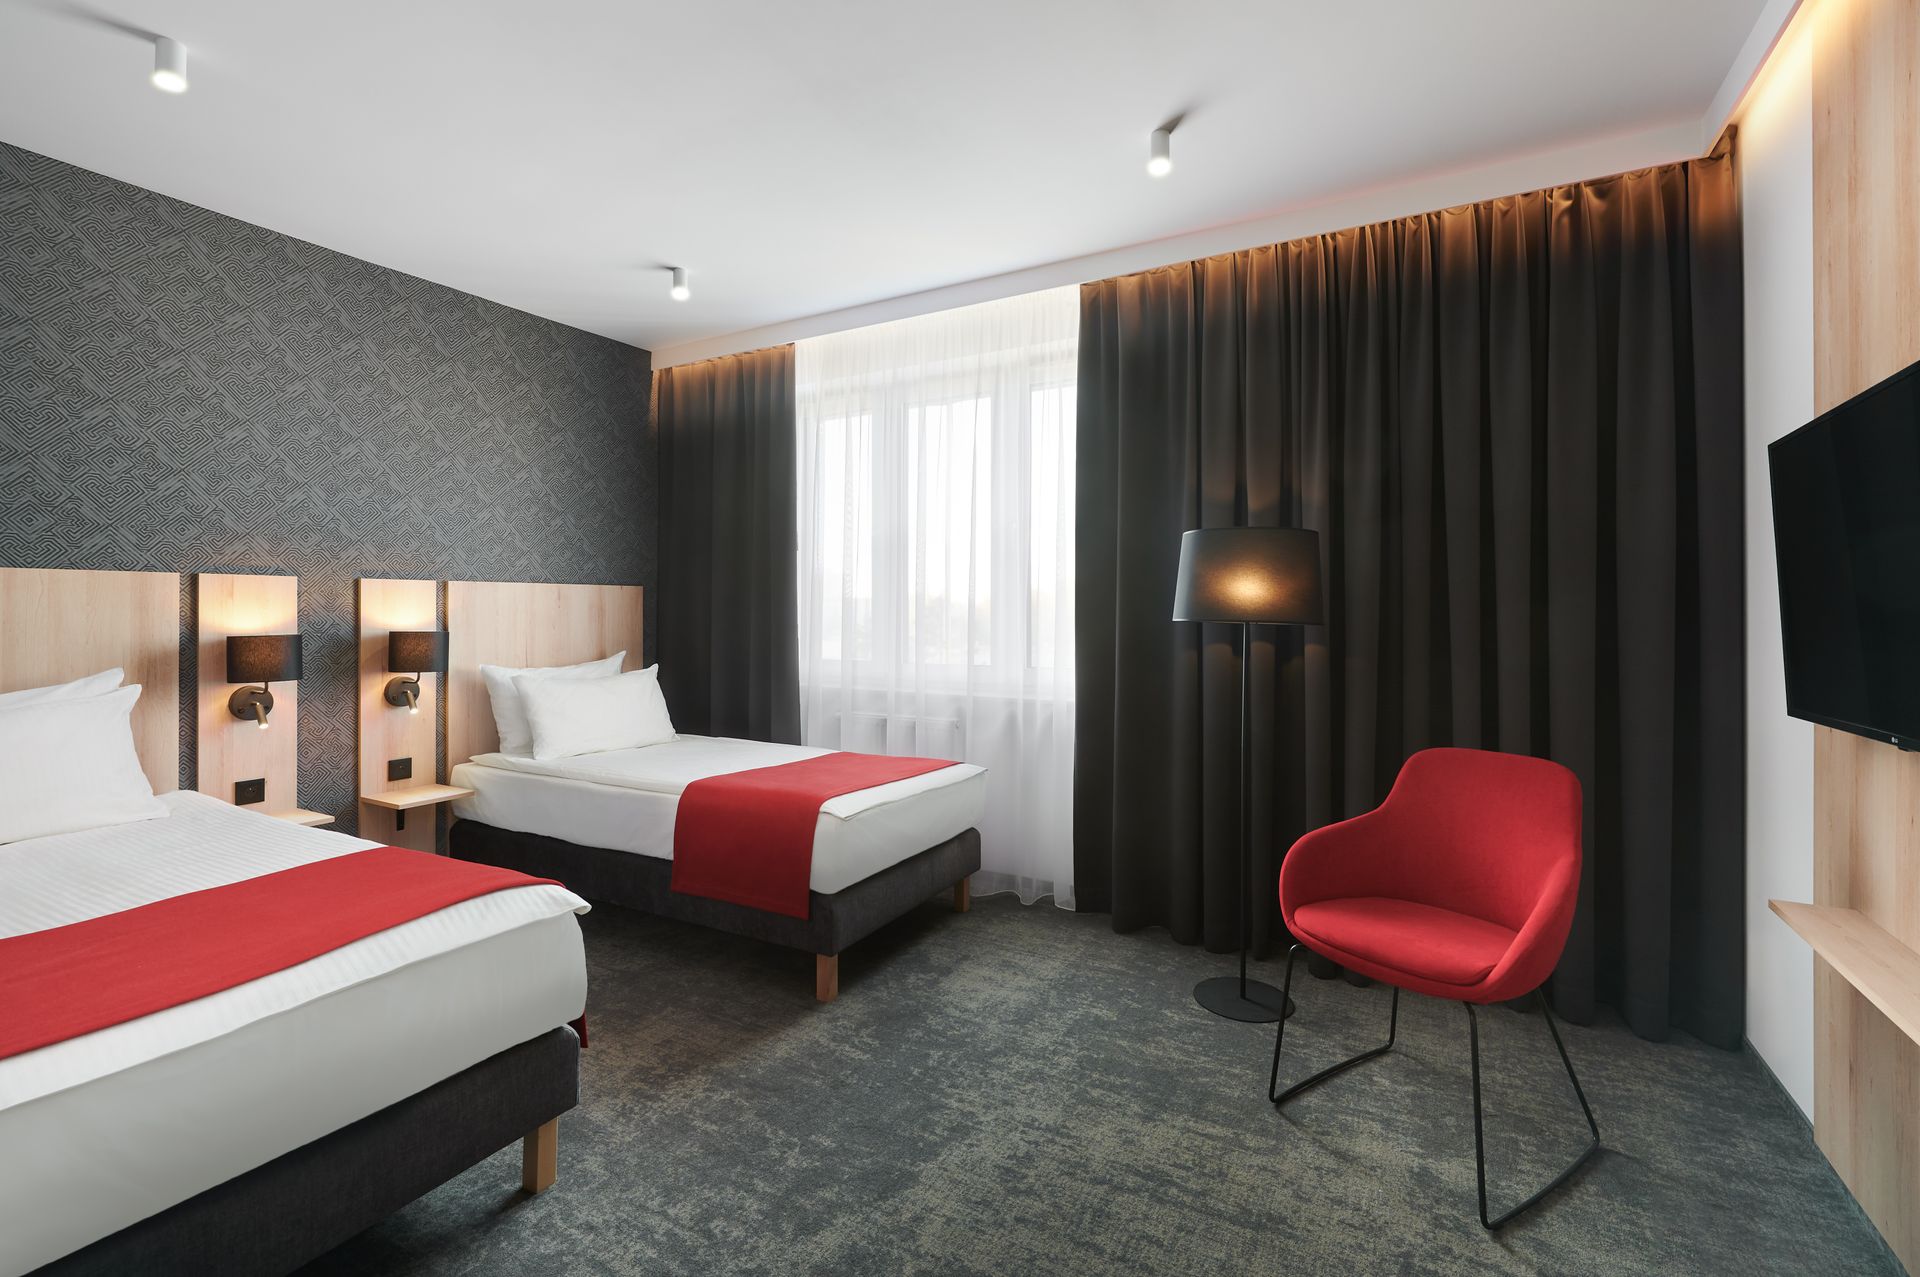 Rzeszowski hotel Hetman przechodzi modernizację. Będzie funkcjonować pod szyldem marki Best Western Plus 